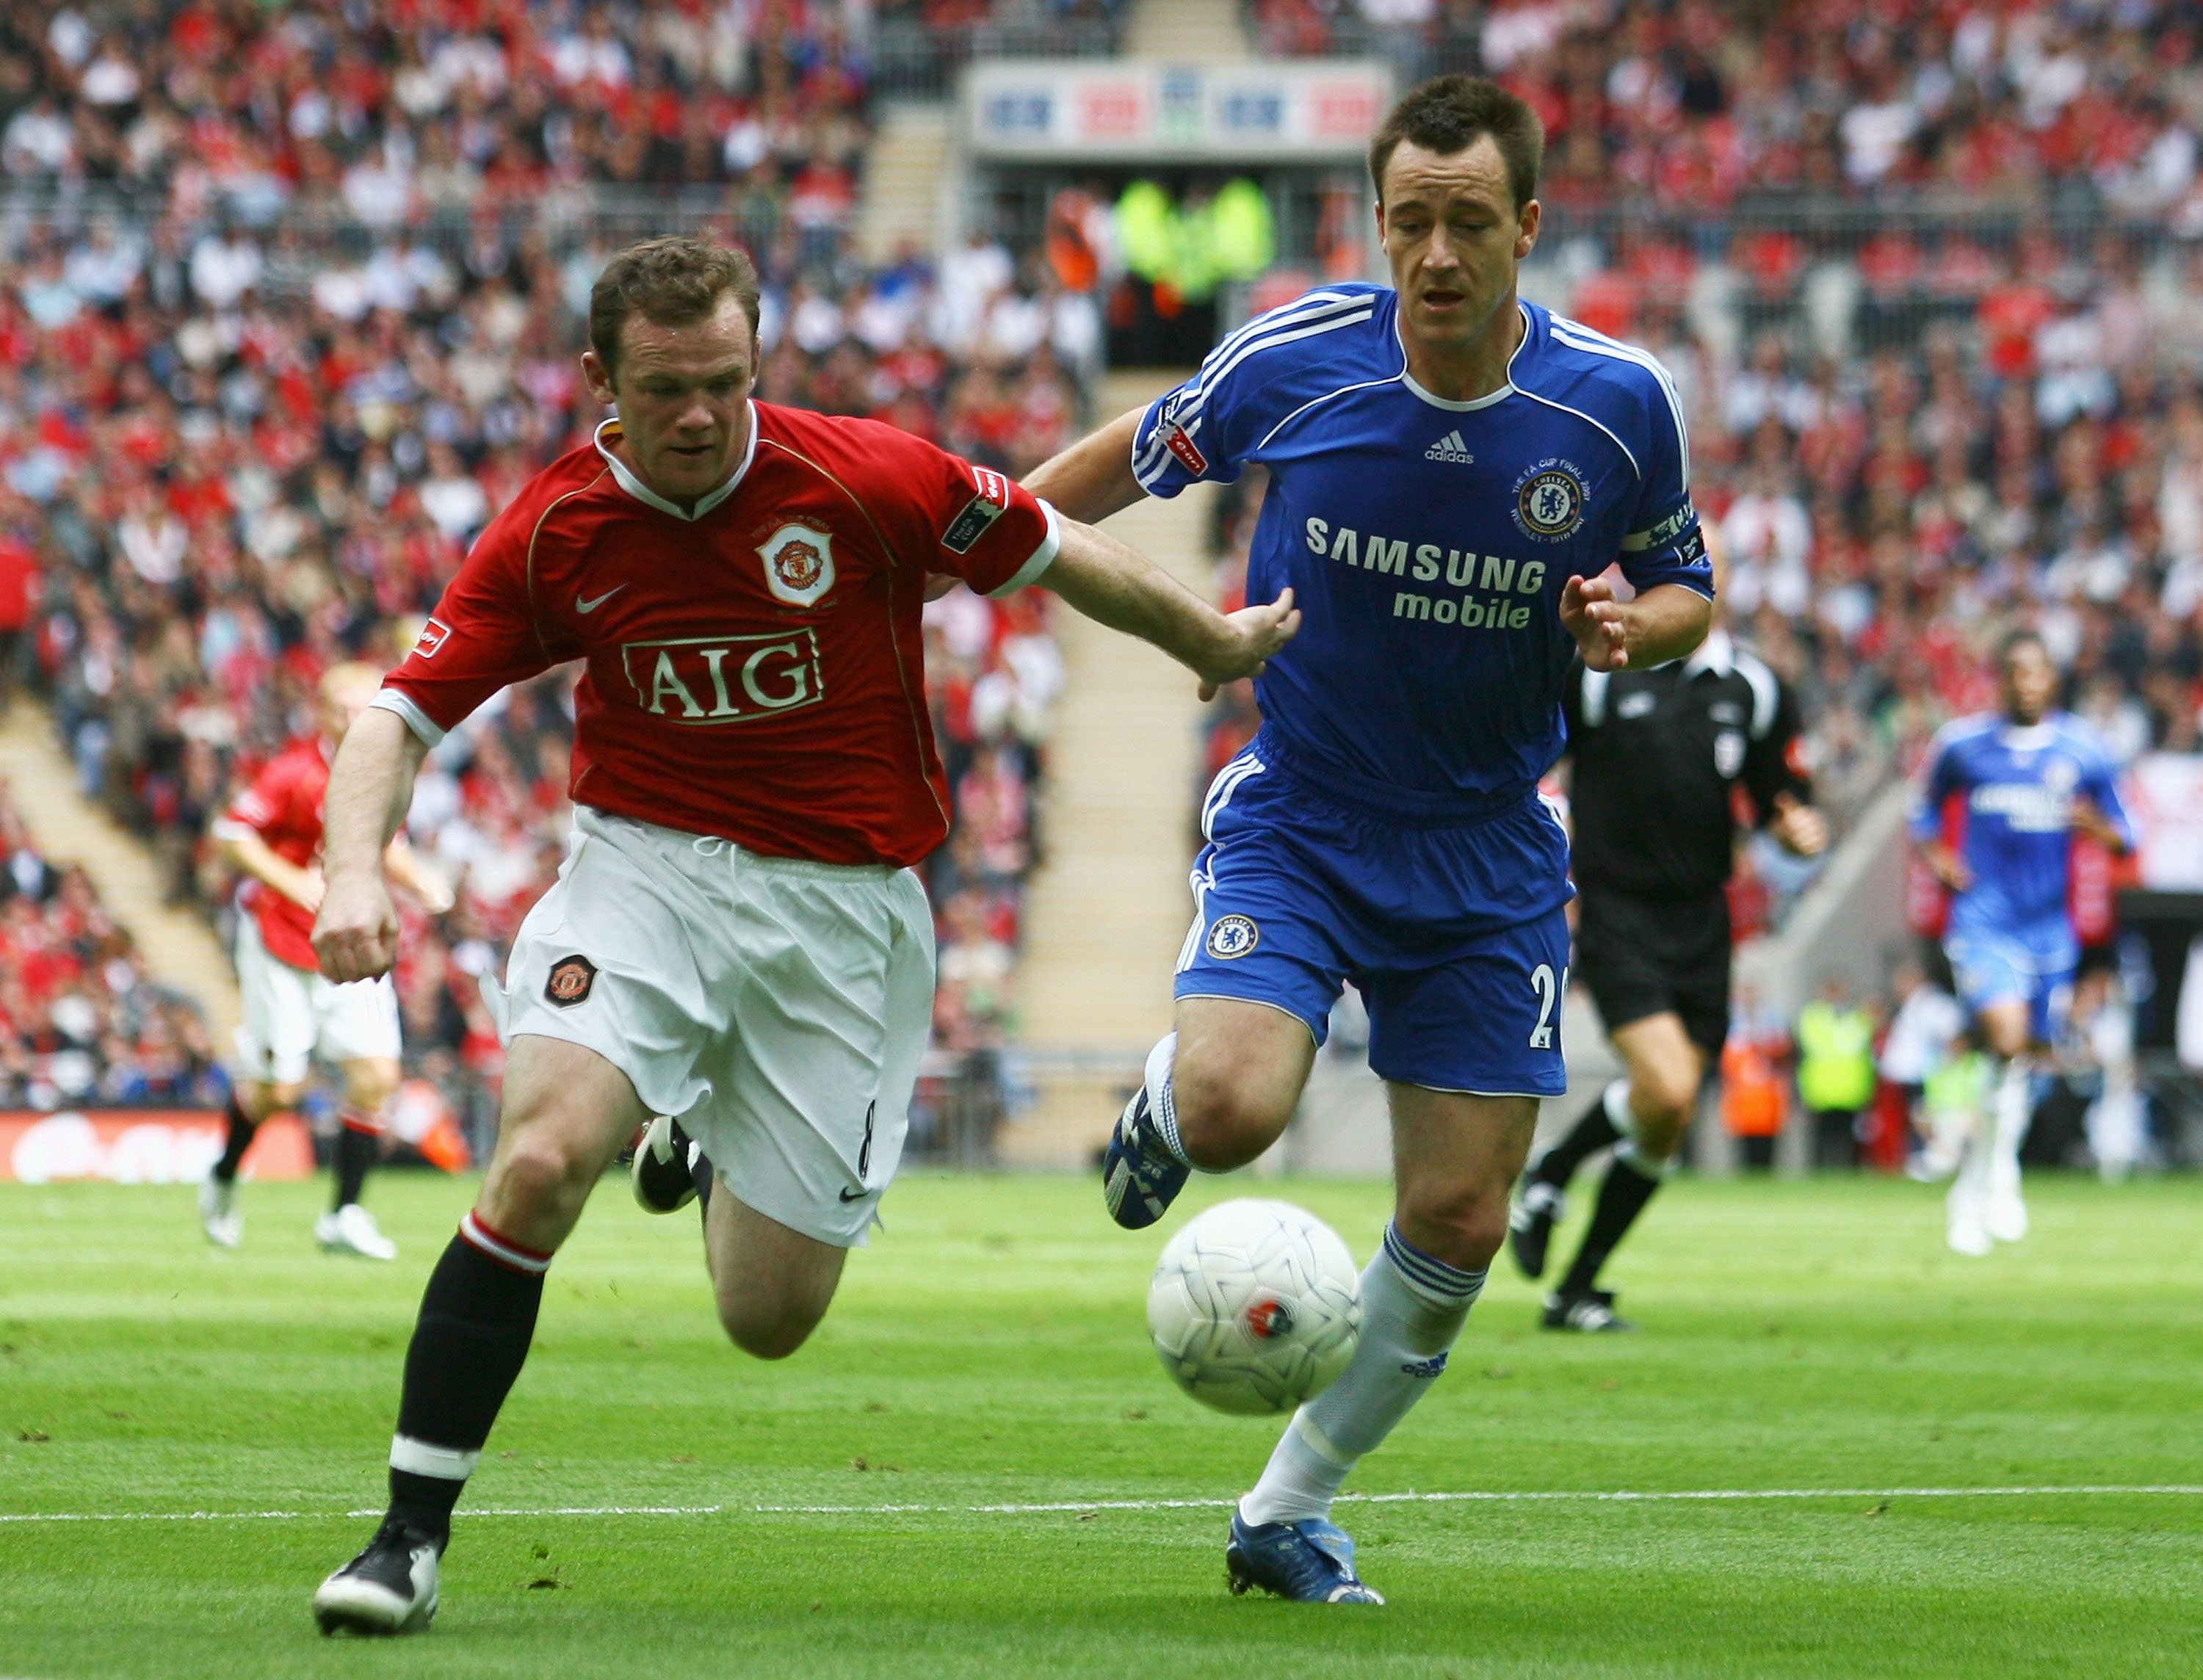 The Premiership is back! 2007/08 fixtures released: Man Utd v Reading, Chelsea v ...